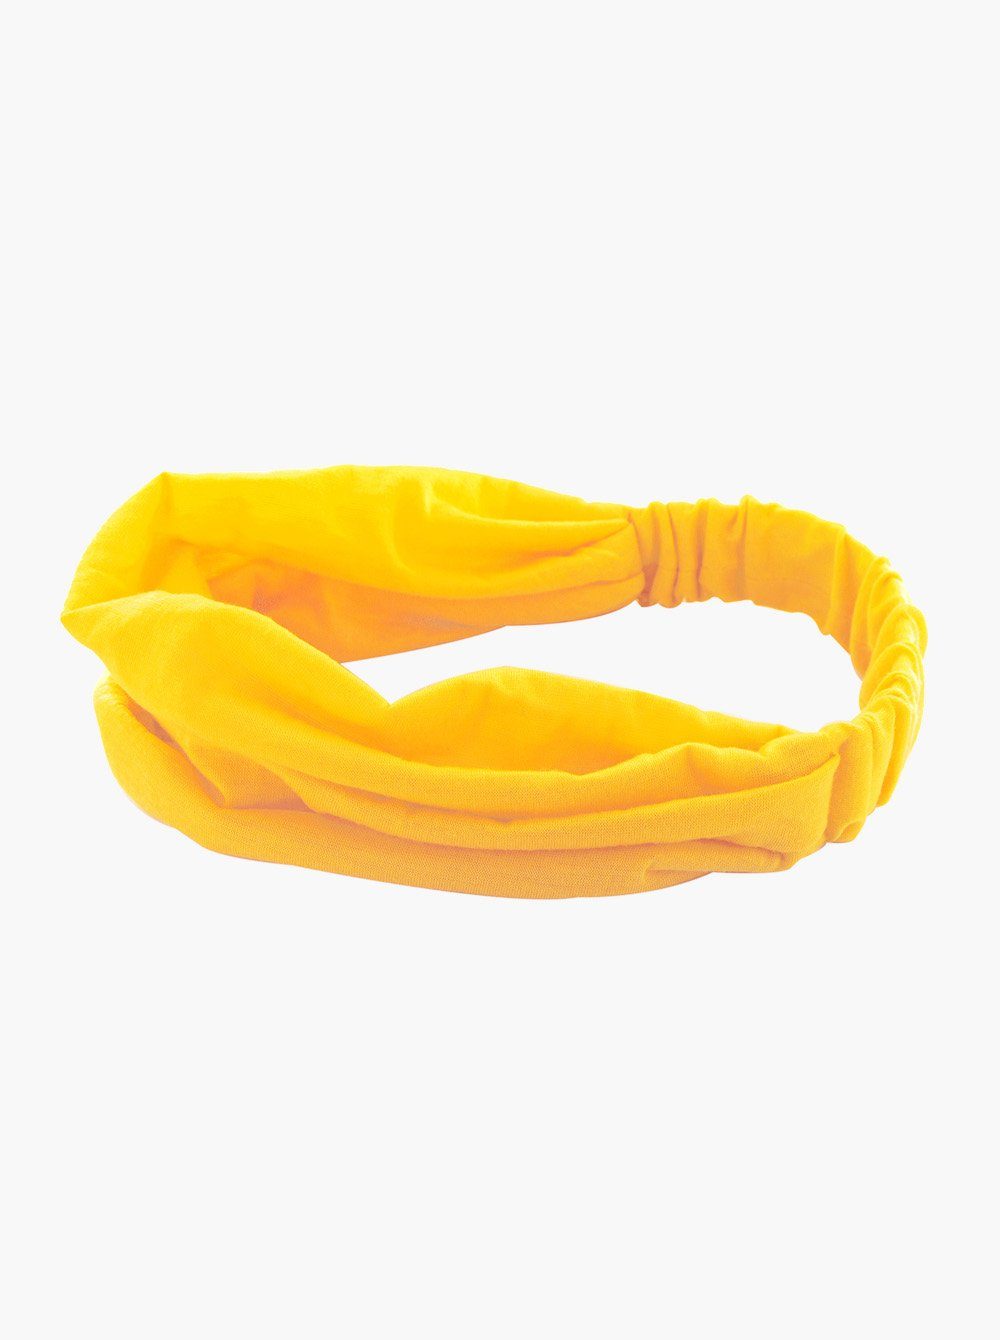 Haarband Yoga Kopfband, Stirnband und Haarband axy Gelb Damen Sport Hairband für